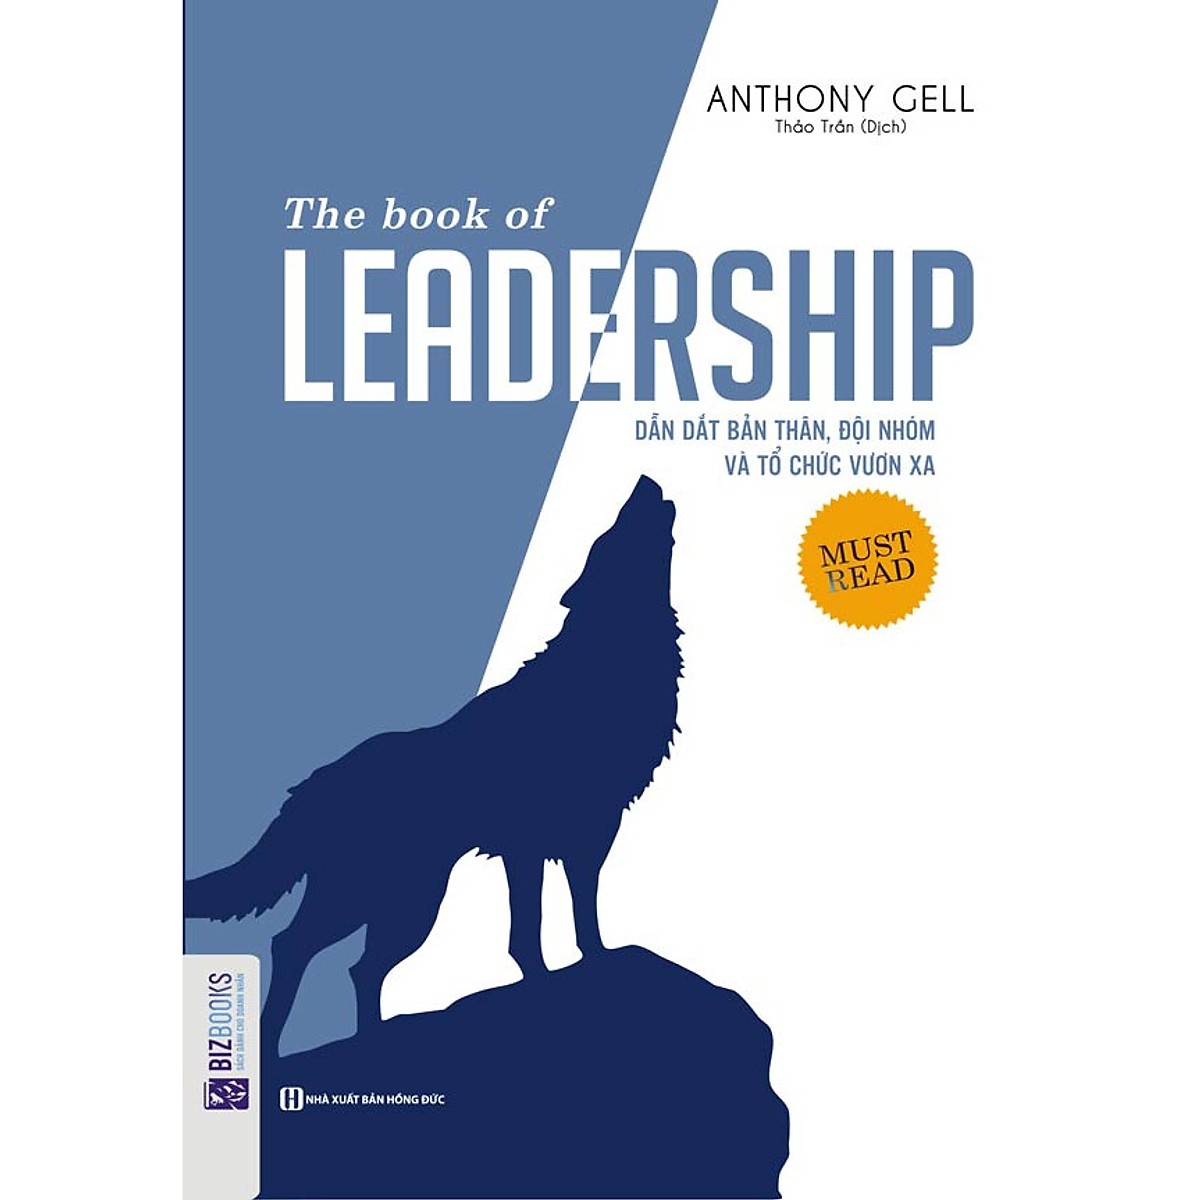 BỘ SÁCH VỀ NHỮNG BÀI HỌC SƯƠNG MÁU CỦA CÁC DOANH NGHIỆP 2 (The Book Of Leadership - Dẫn Dắt Bản Thân, Đội Nhóm Và Tổ Chức Vươn Xa+Bài Học Để Đời Từ Những Doanh Nghiệp Thất Bại (Tập 2)+Luật Thành Công Tập 2 